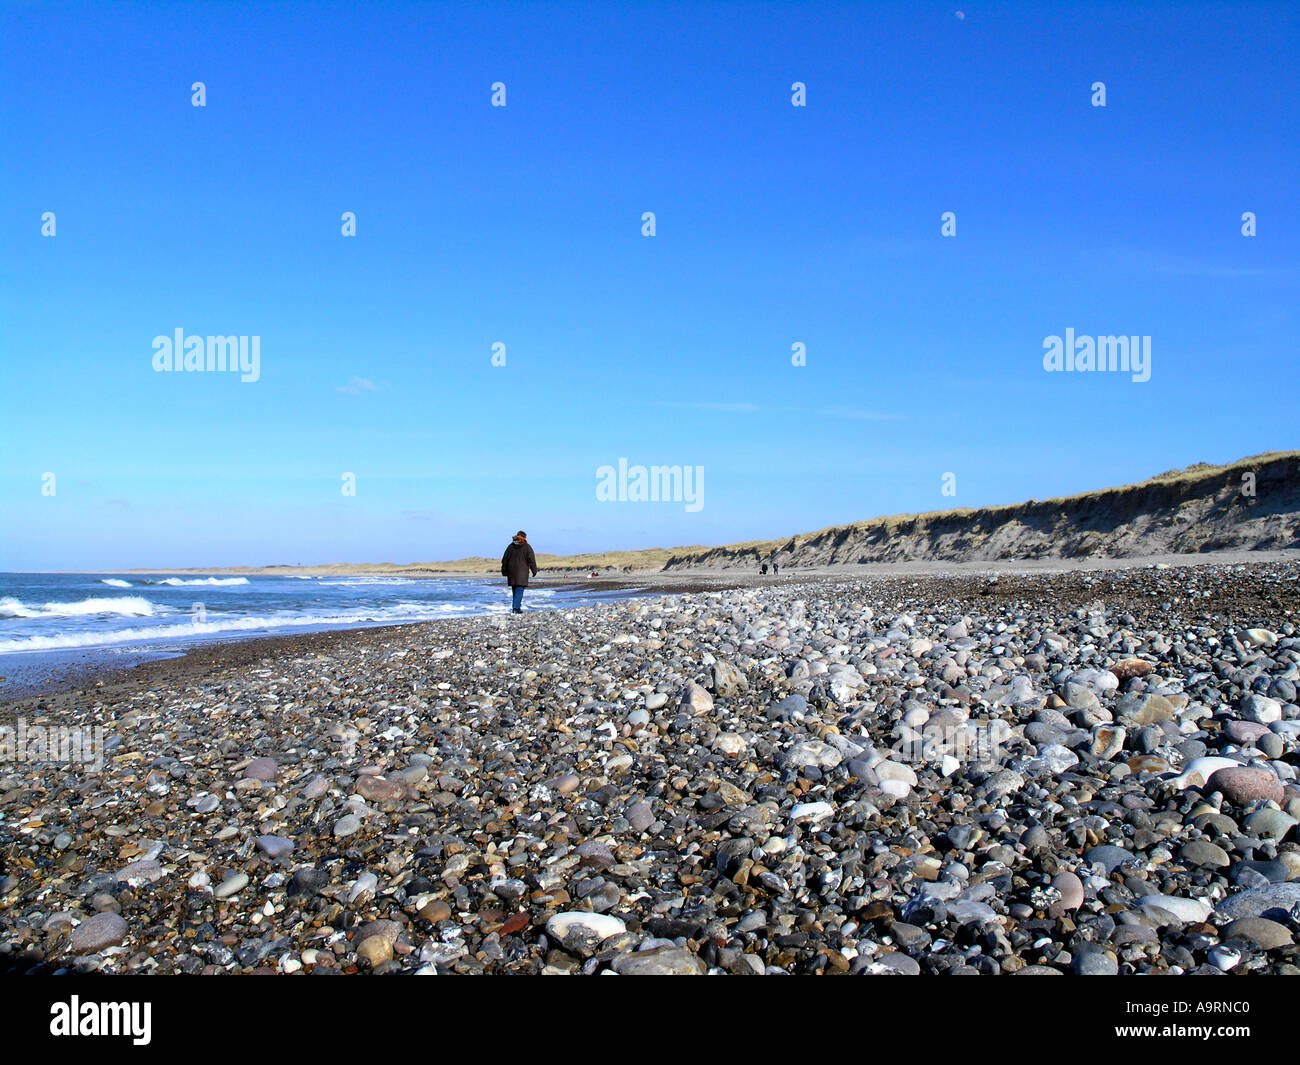 Persona solitaria caminando por el litoral, hasta el mar del Norte en Vorupore parte oeste de Jutlandia, Dinamarca Foto de stock